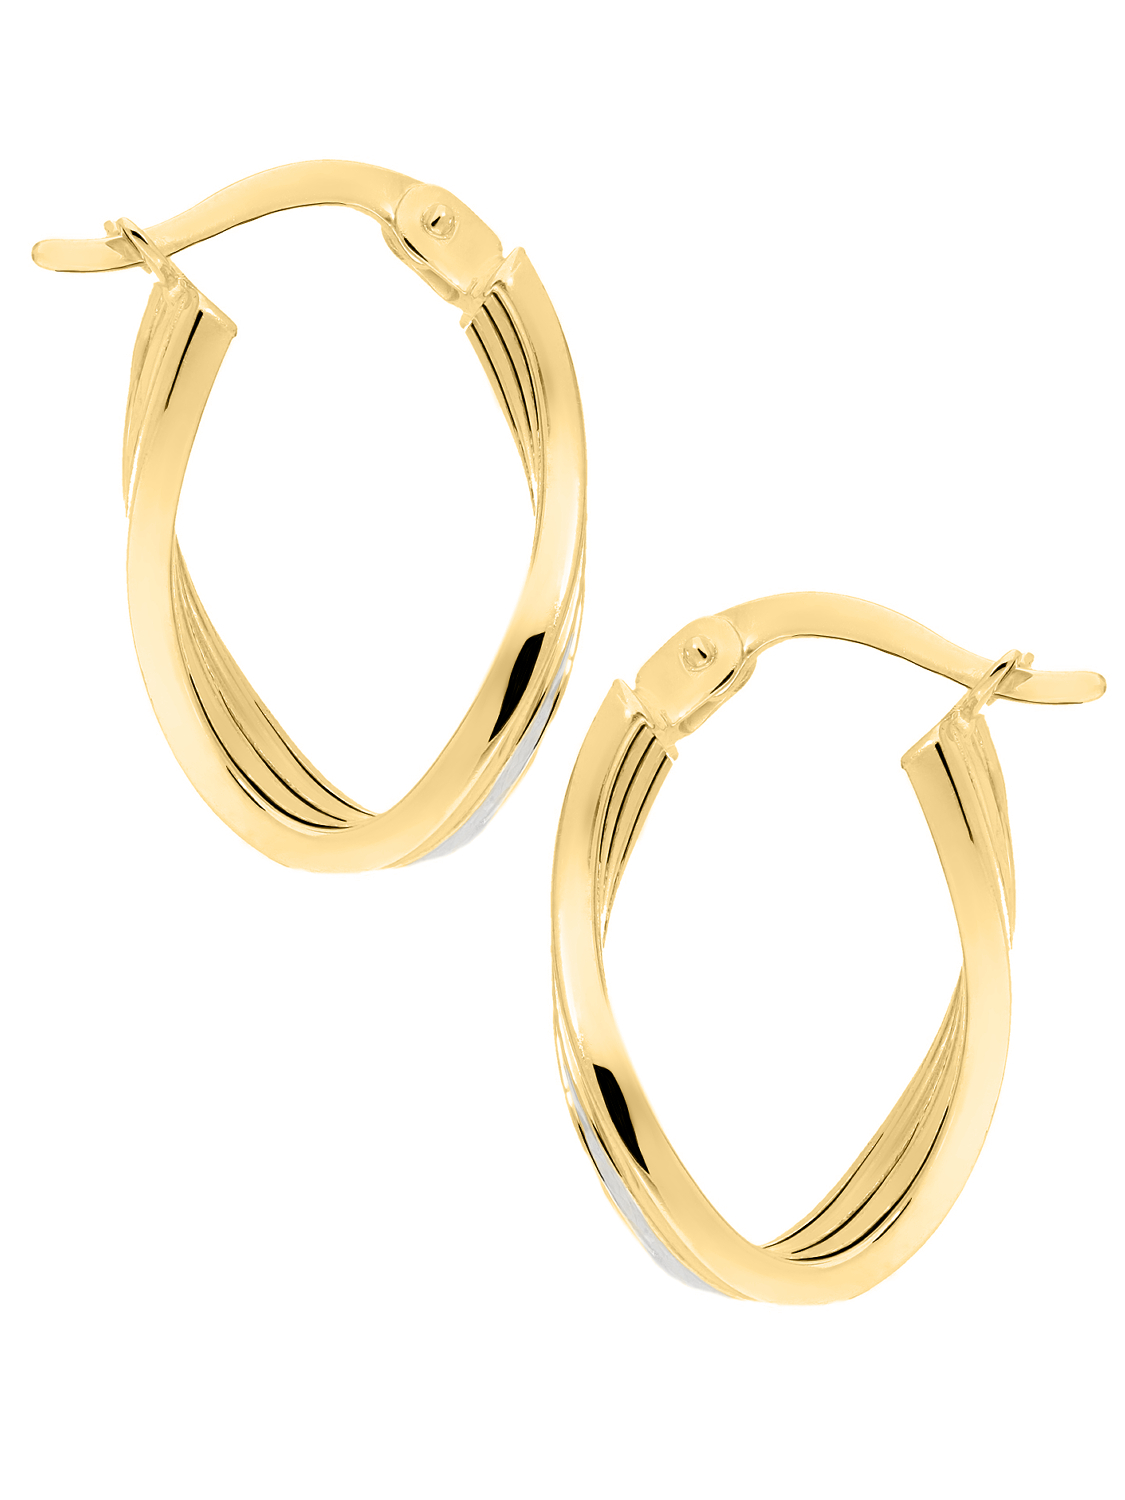 Damencreolen aus echtem Gelbgold & Weißgold mit Diamantierung - Eartwist | Vorderansicht